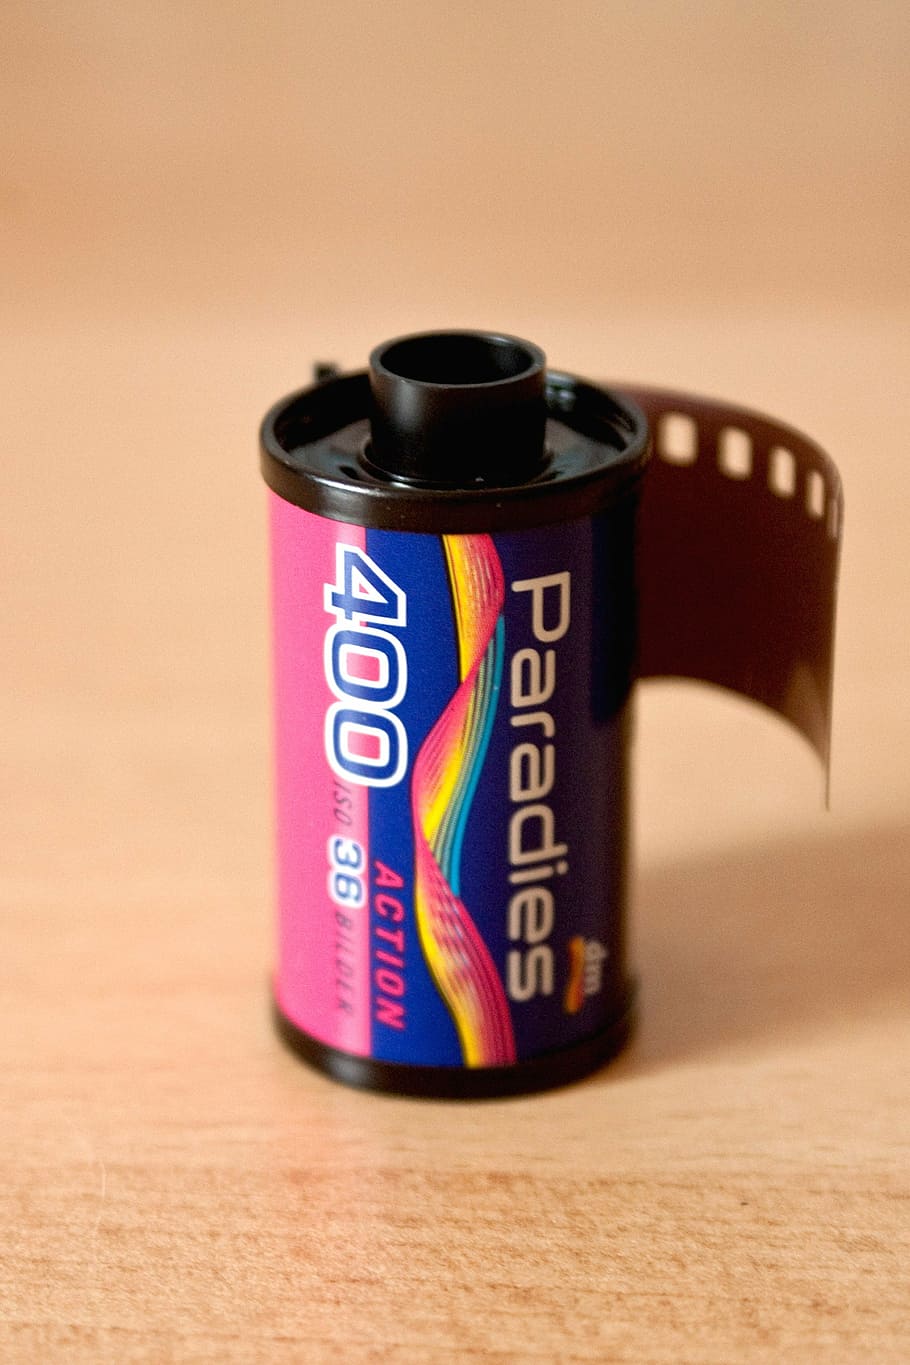 アナログ, フィルム, ボックス, フィルムキャニスター, 35 mmフィルム, 写真, 録音, メディア, ネガティブ, フィルムストリップ